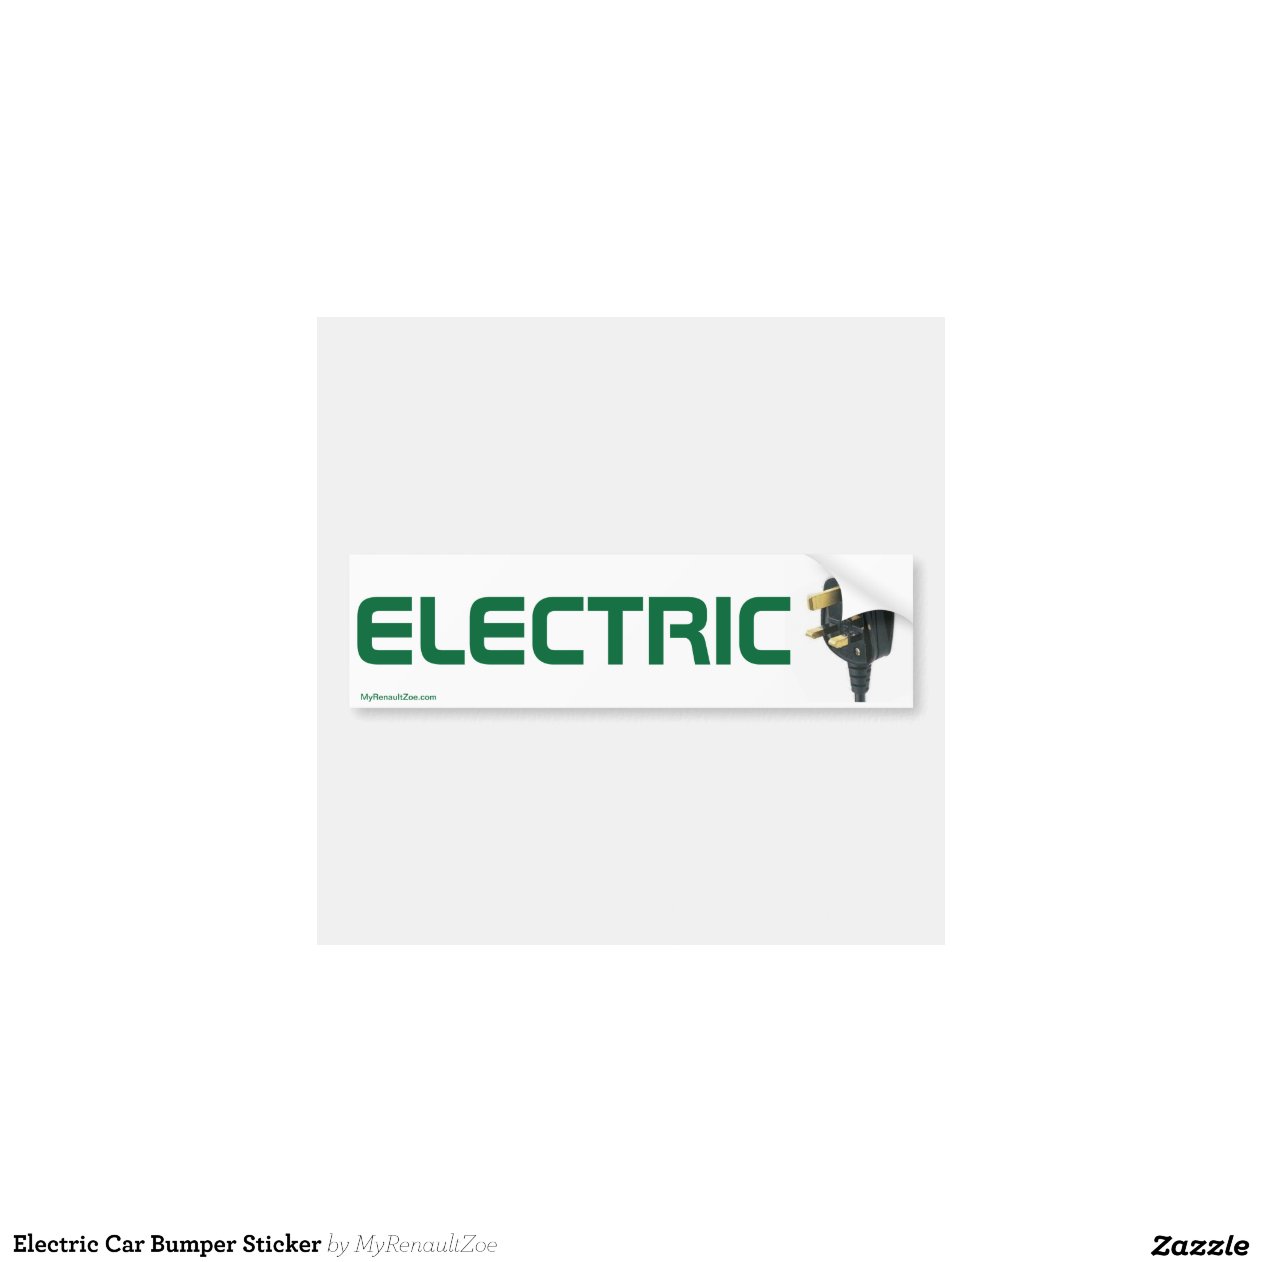 Electric Car Bumper Sticker Zazzle